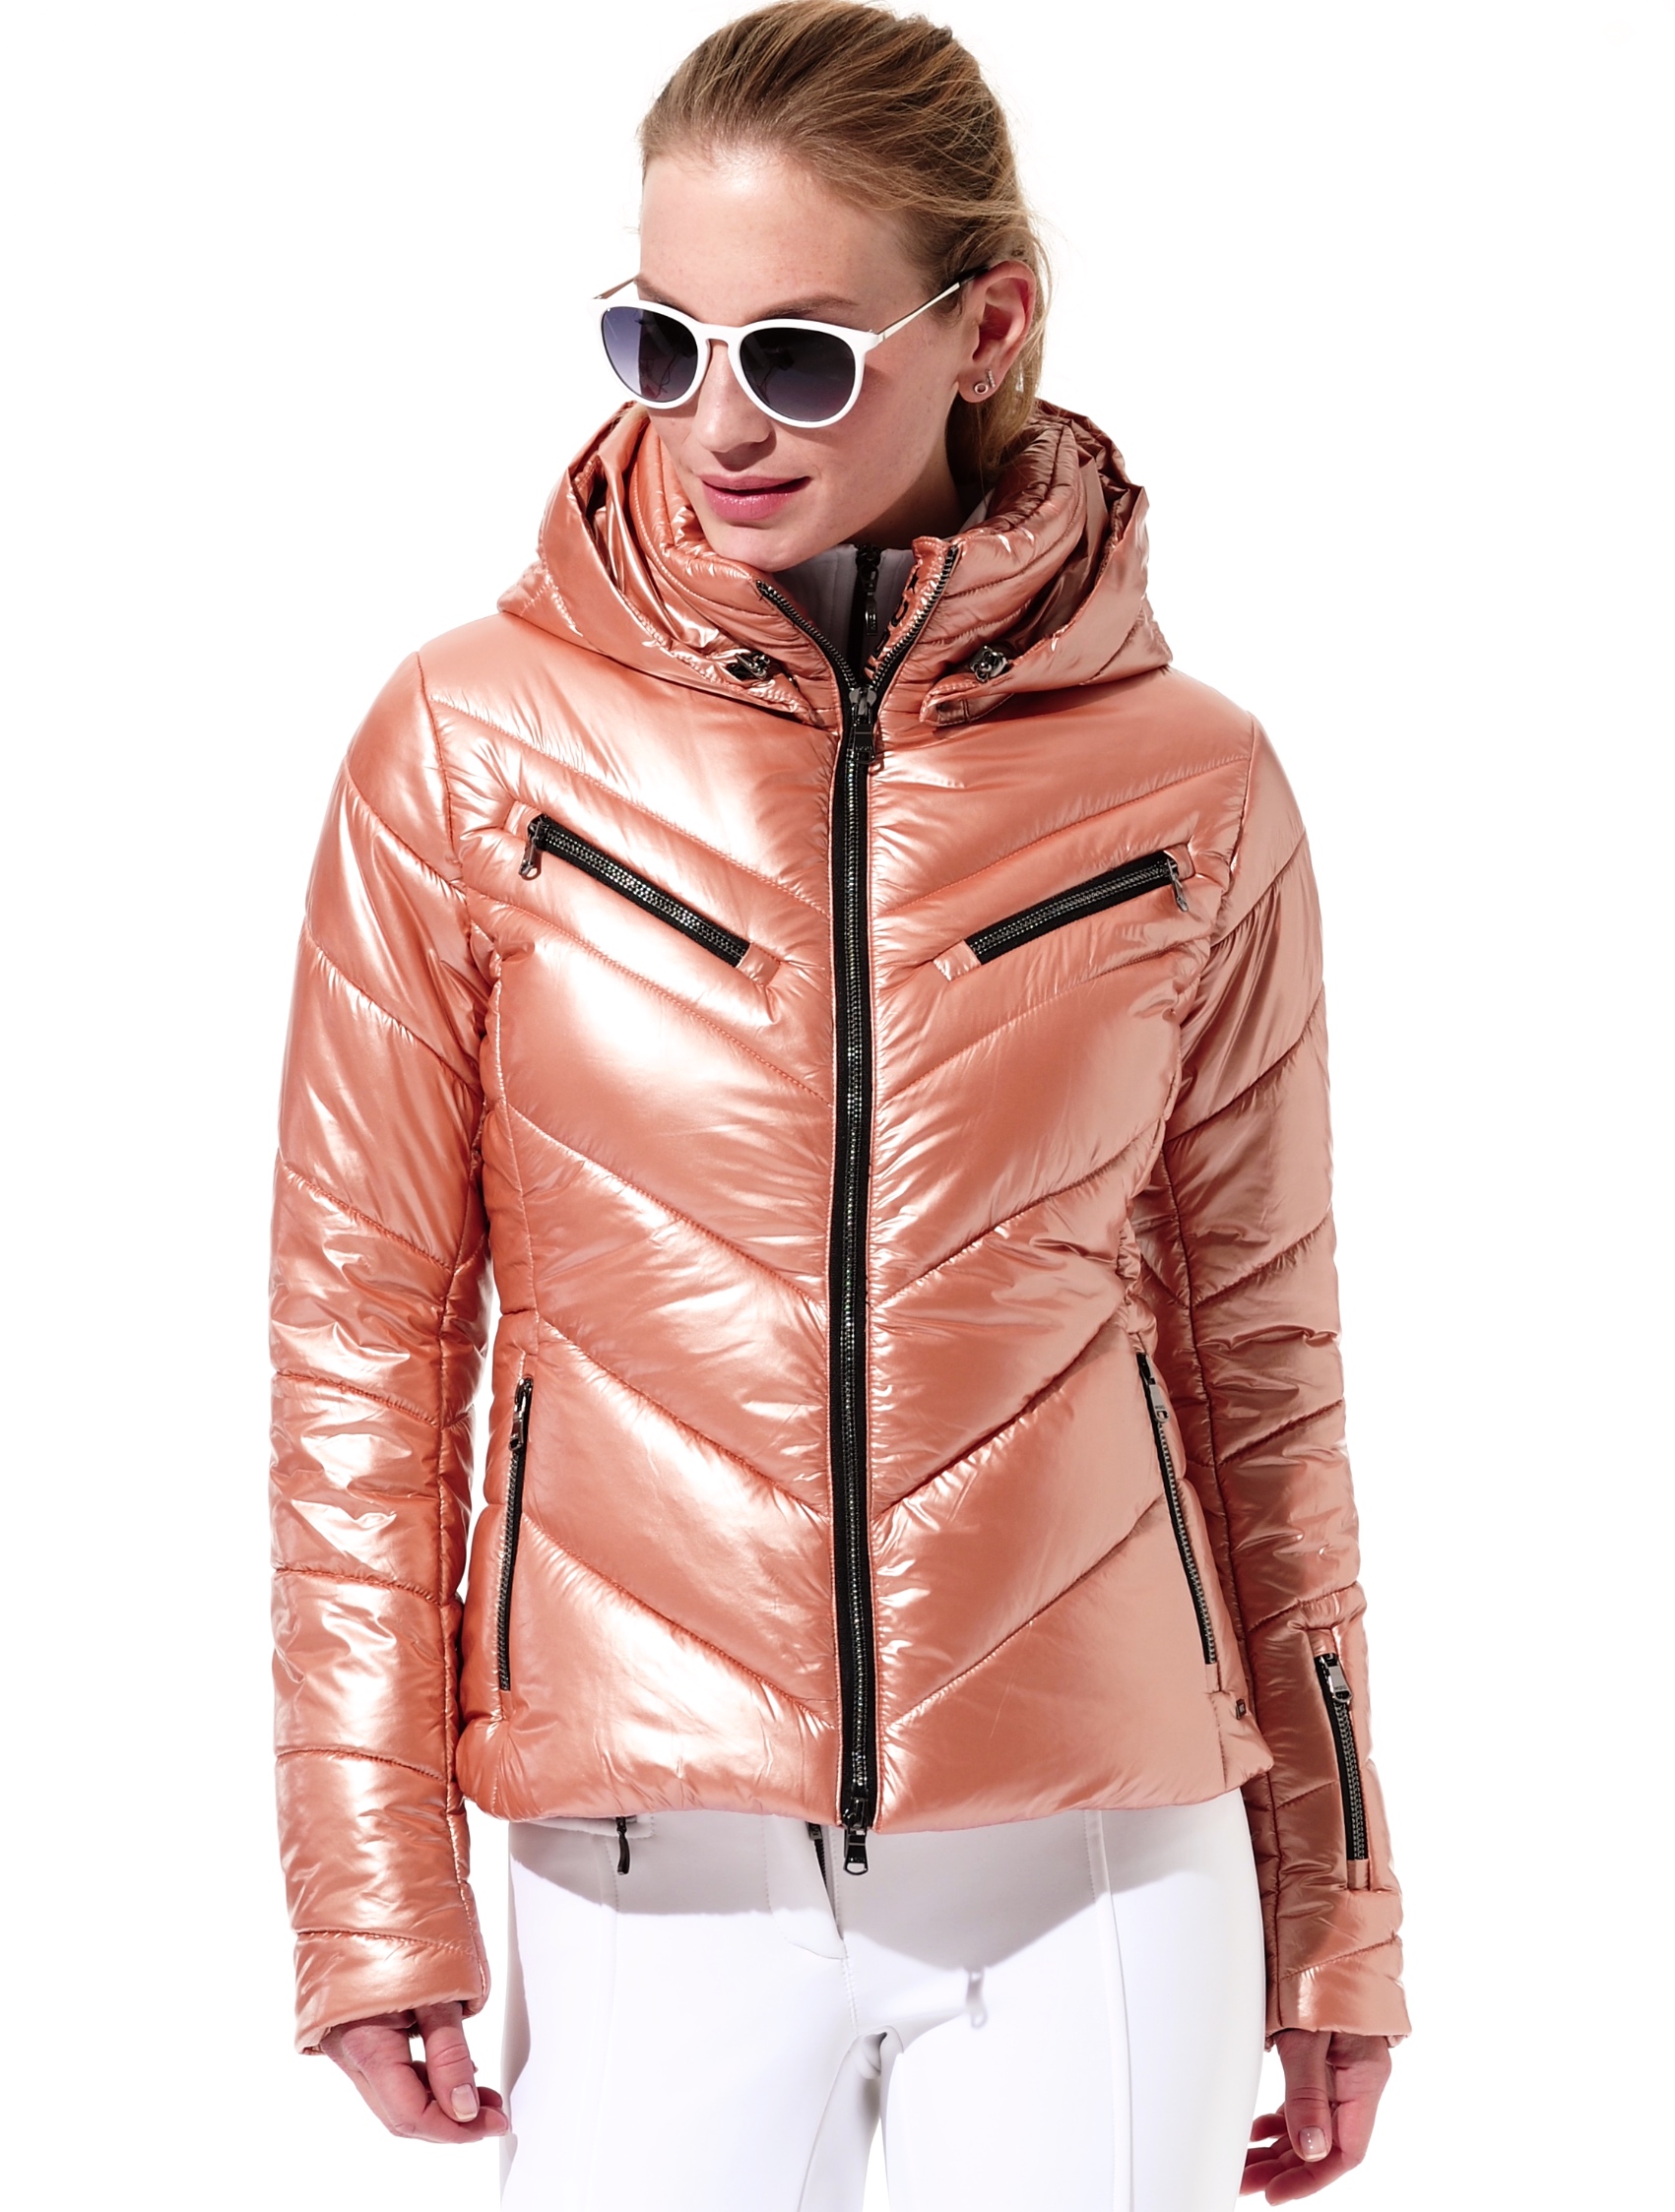 shiny ski jacket rose gold 